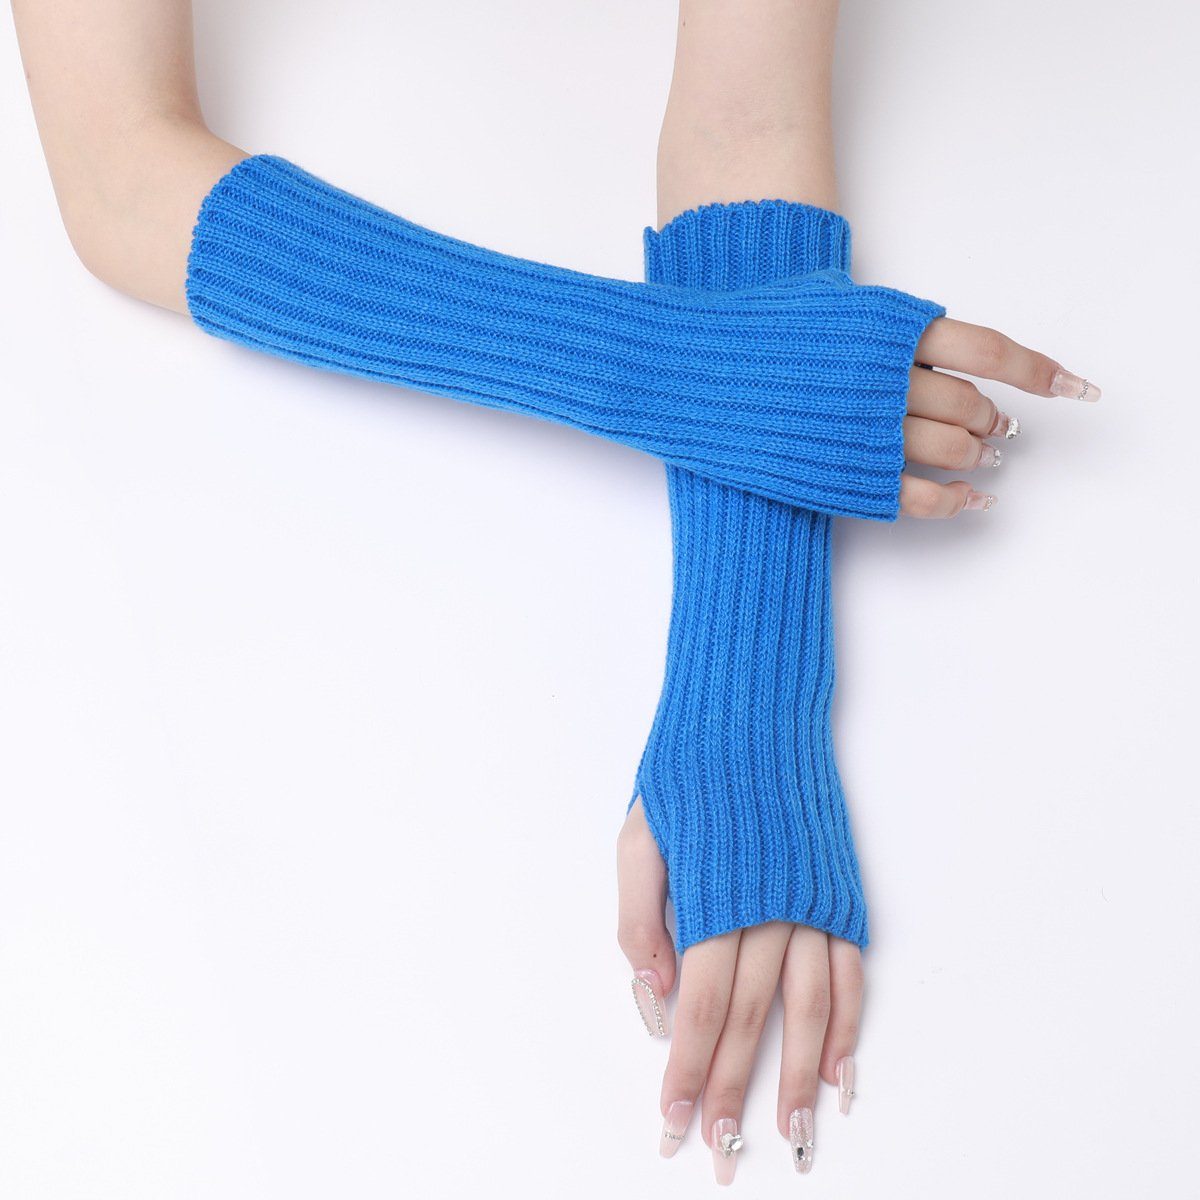 SCOHEAD Strickhandschuhe Armstulpe Handschuhe Strickhandschuhe Strick Ärmelabdeckung (1 paar, Ästhetische Mode, einfarbiges Design) Geeignet für alle Gelegenheiten, ein Muss für Herbst und Winter blau